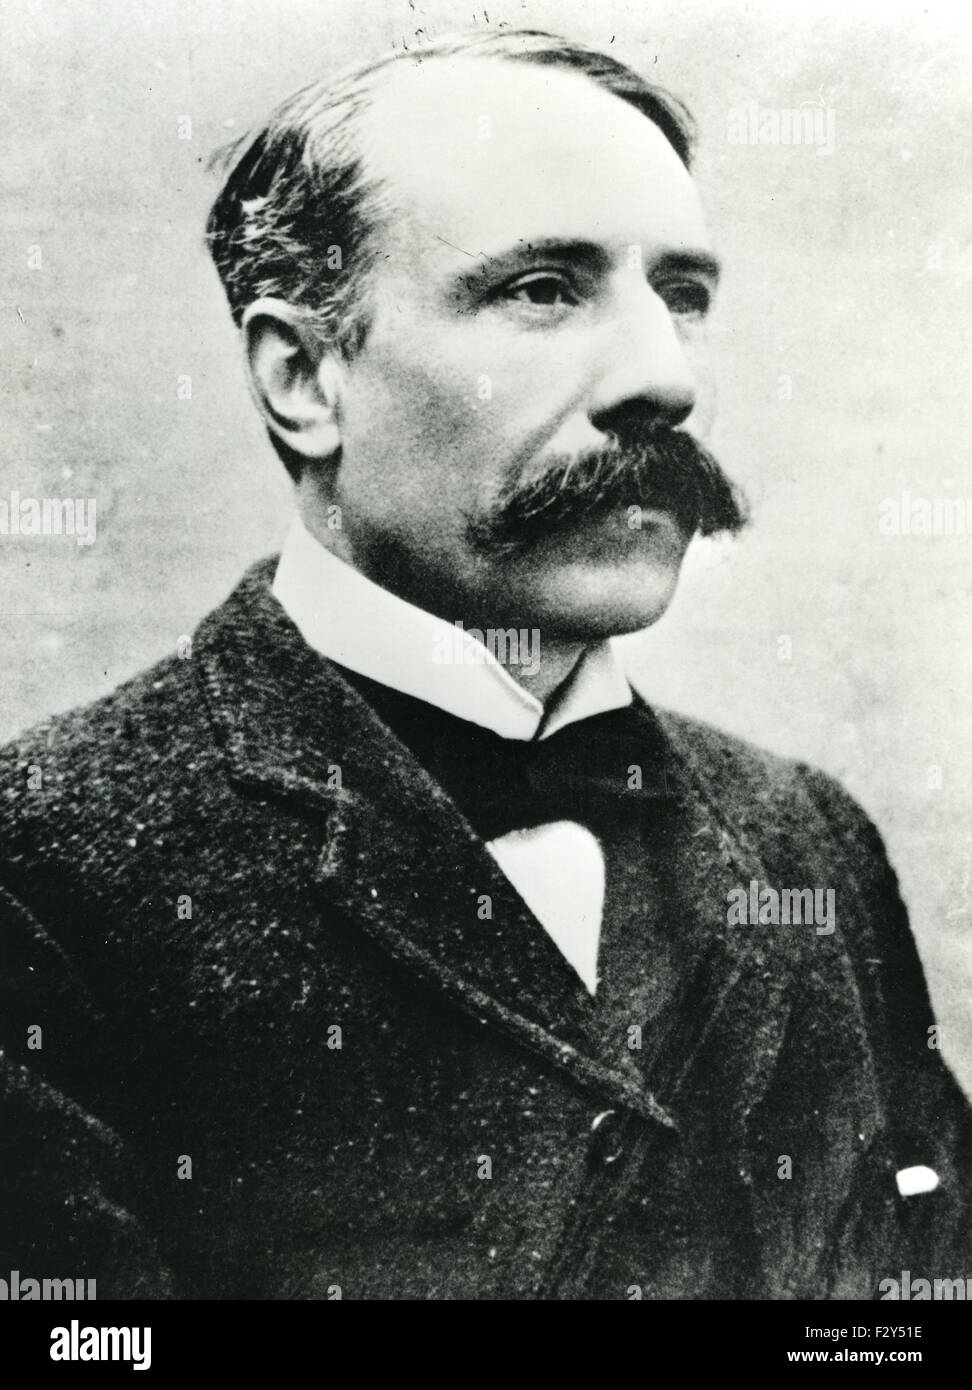 EDWARD Elgar (1857-1934) compositeur anglais vers 1900 Banque D'Images